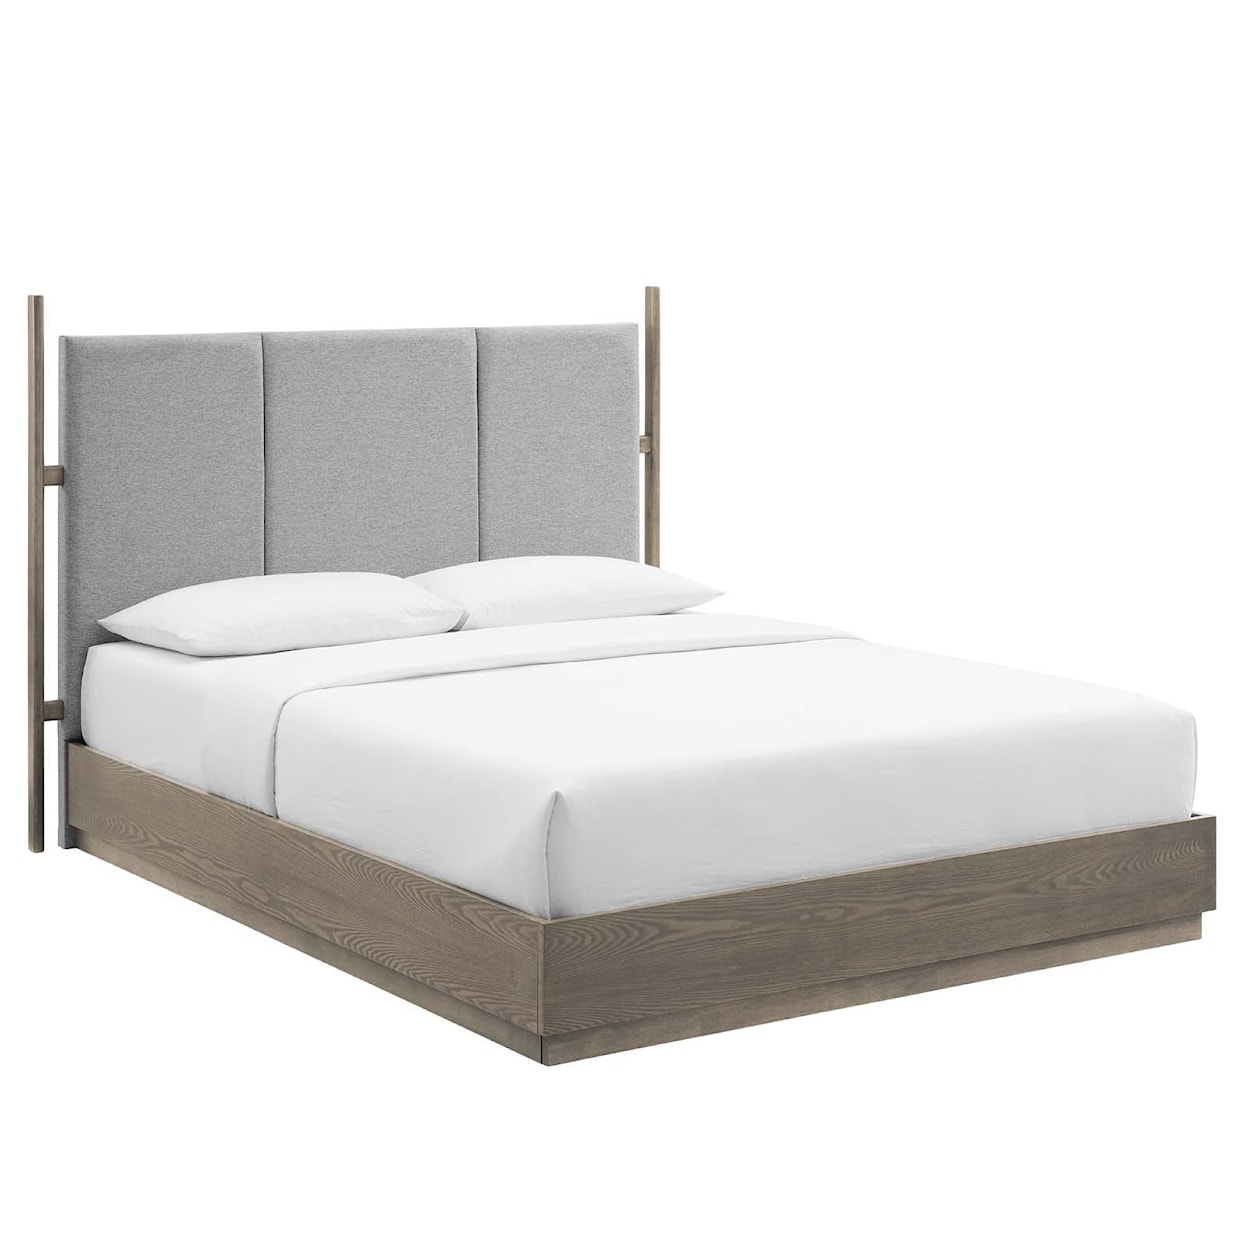 Modway Merritt Merritt 5 Piece Upholstered Bedroom Set